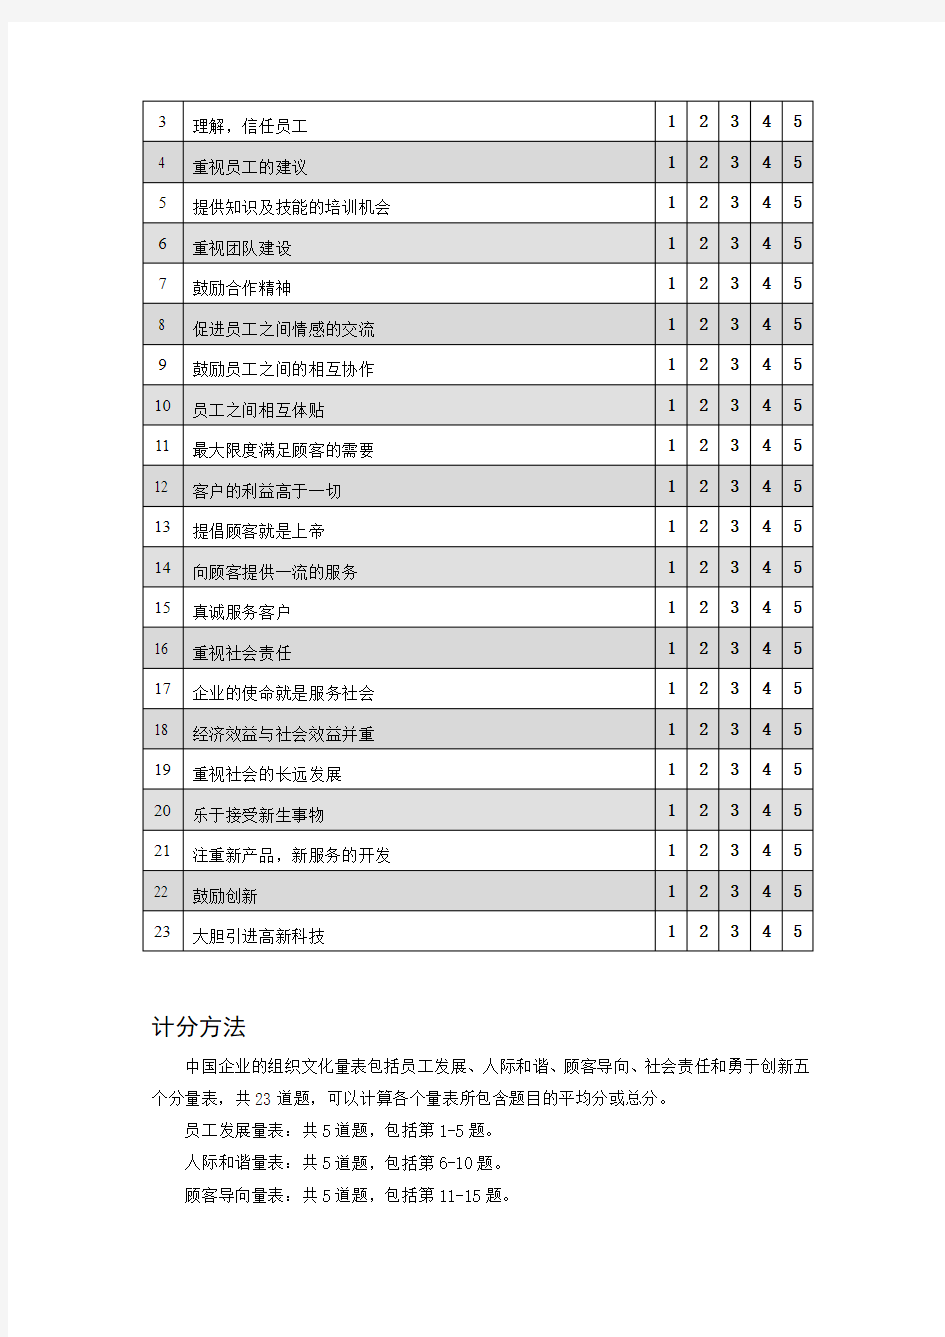 中国企业的组织文化量表Tsui等2006